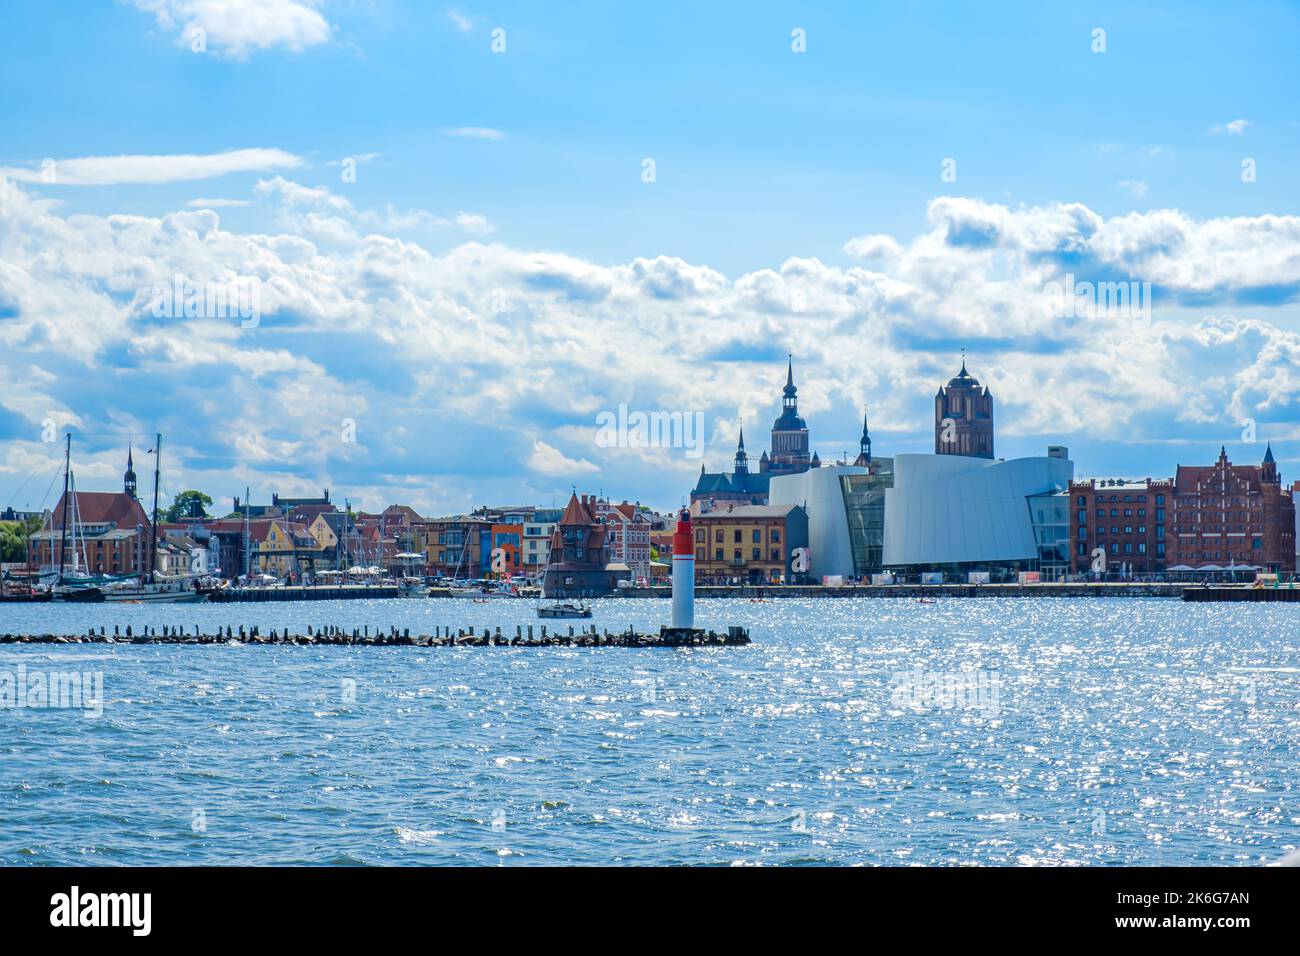 Vue sur le bord de mer depuis le détroit de Strela jusqu'à la lumière centrale du brise-lames, la toile de fond de la ville et le port de la ville hanséatique de Stralsund, en Allemagne. Banque D'Images